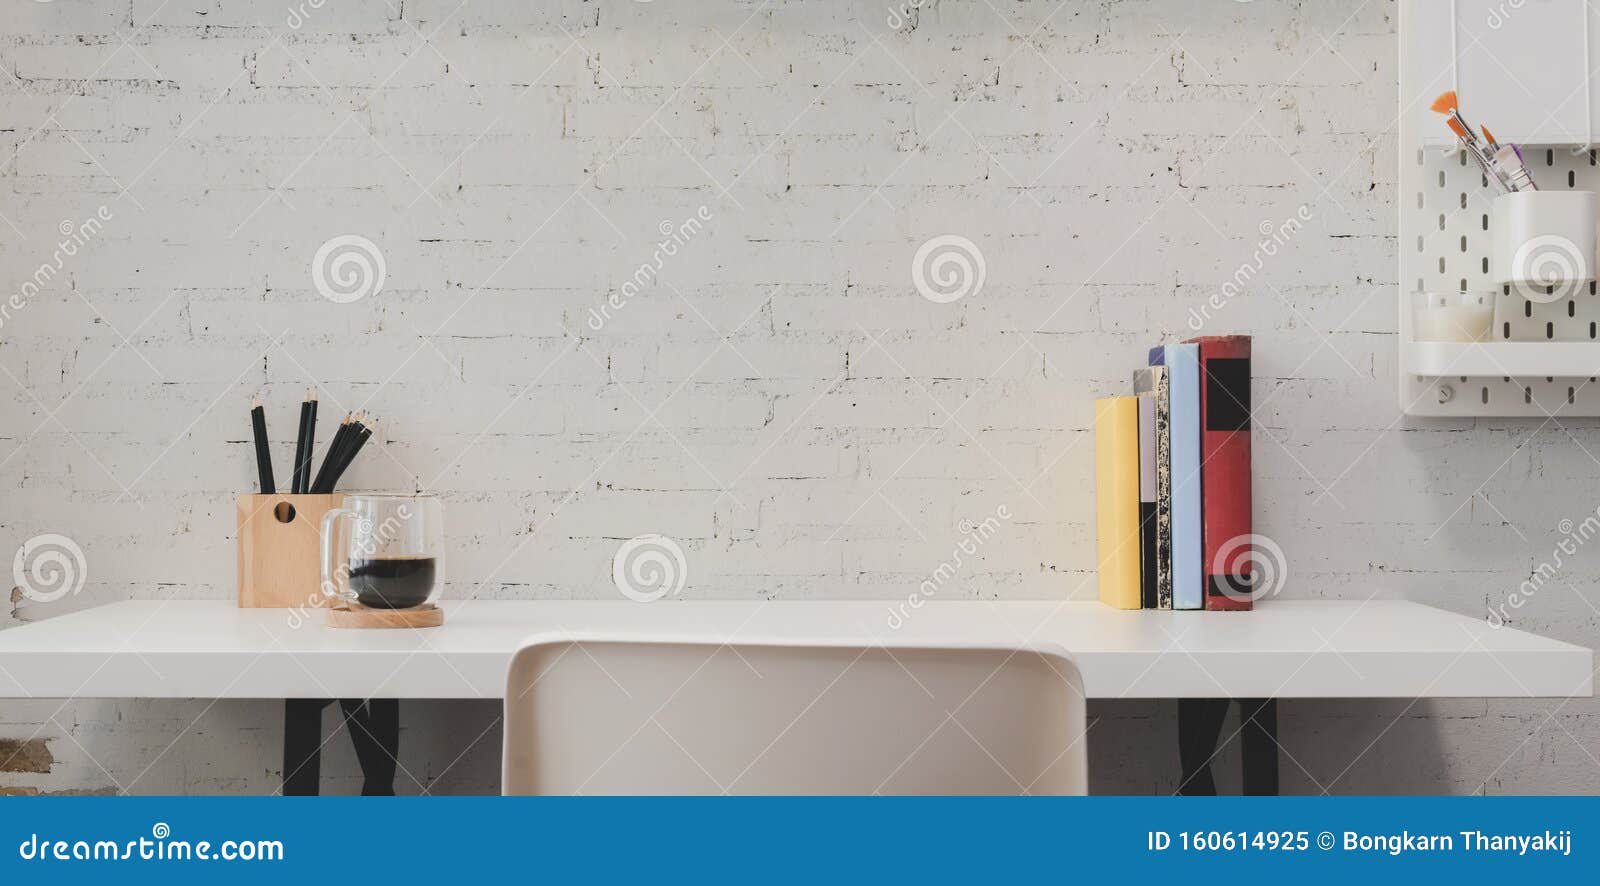 Văn phòng tại nhà tối giản với đồ dùng văn phòng trên nền trắng sẽ giúp bạn tập trung hơn vào công việc và nâng cao năng suất làm việc tại nhà. Hãy cùng khám phá bộ sưu tập hình ảnh liên quan để tìm hiểu các gợi ý thiết kế văn phòng tại nhà tối giản nhưng hiệu quả.